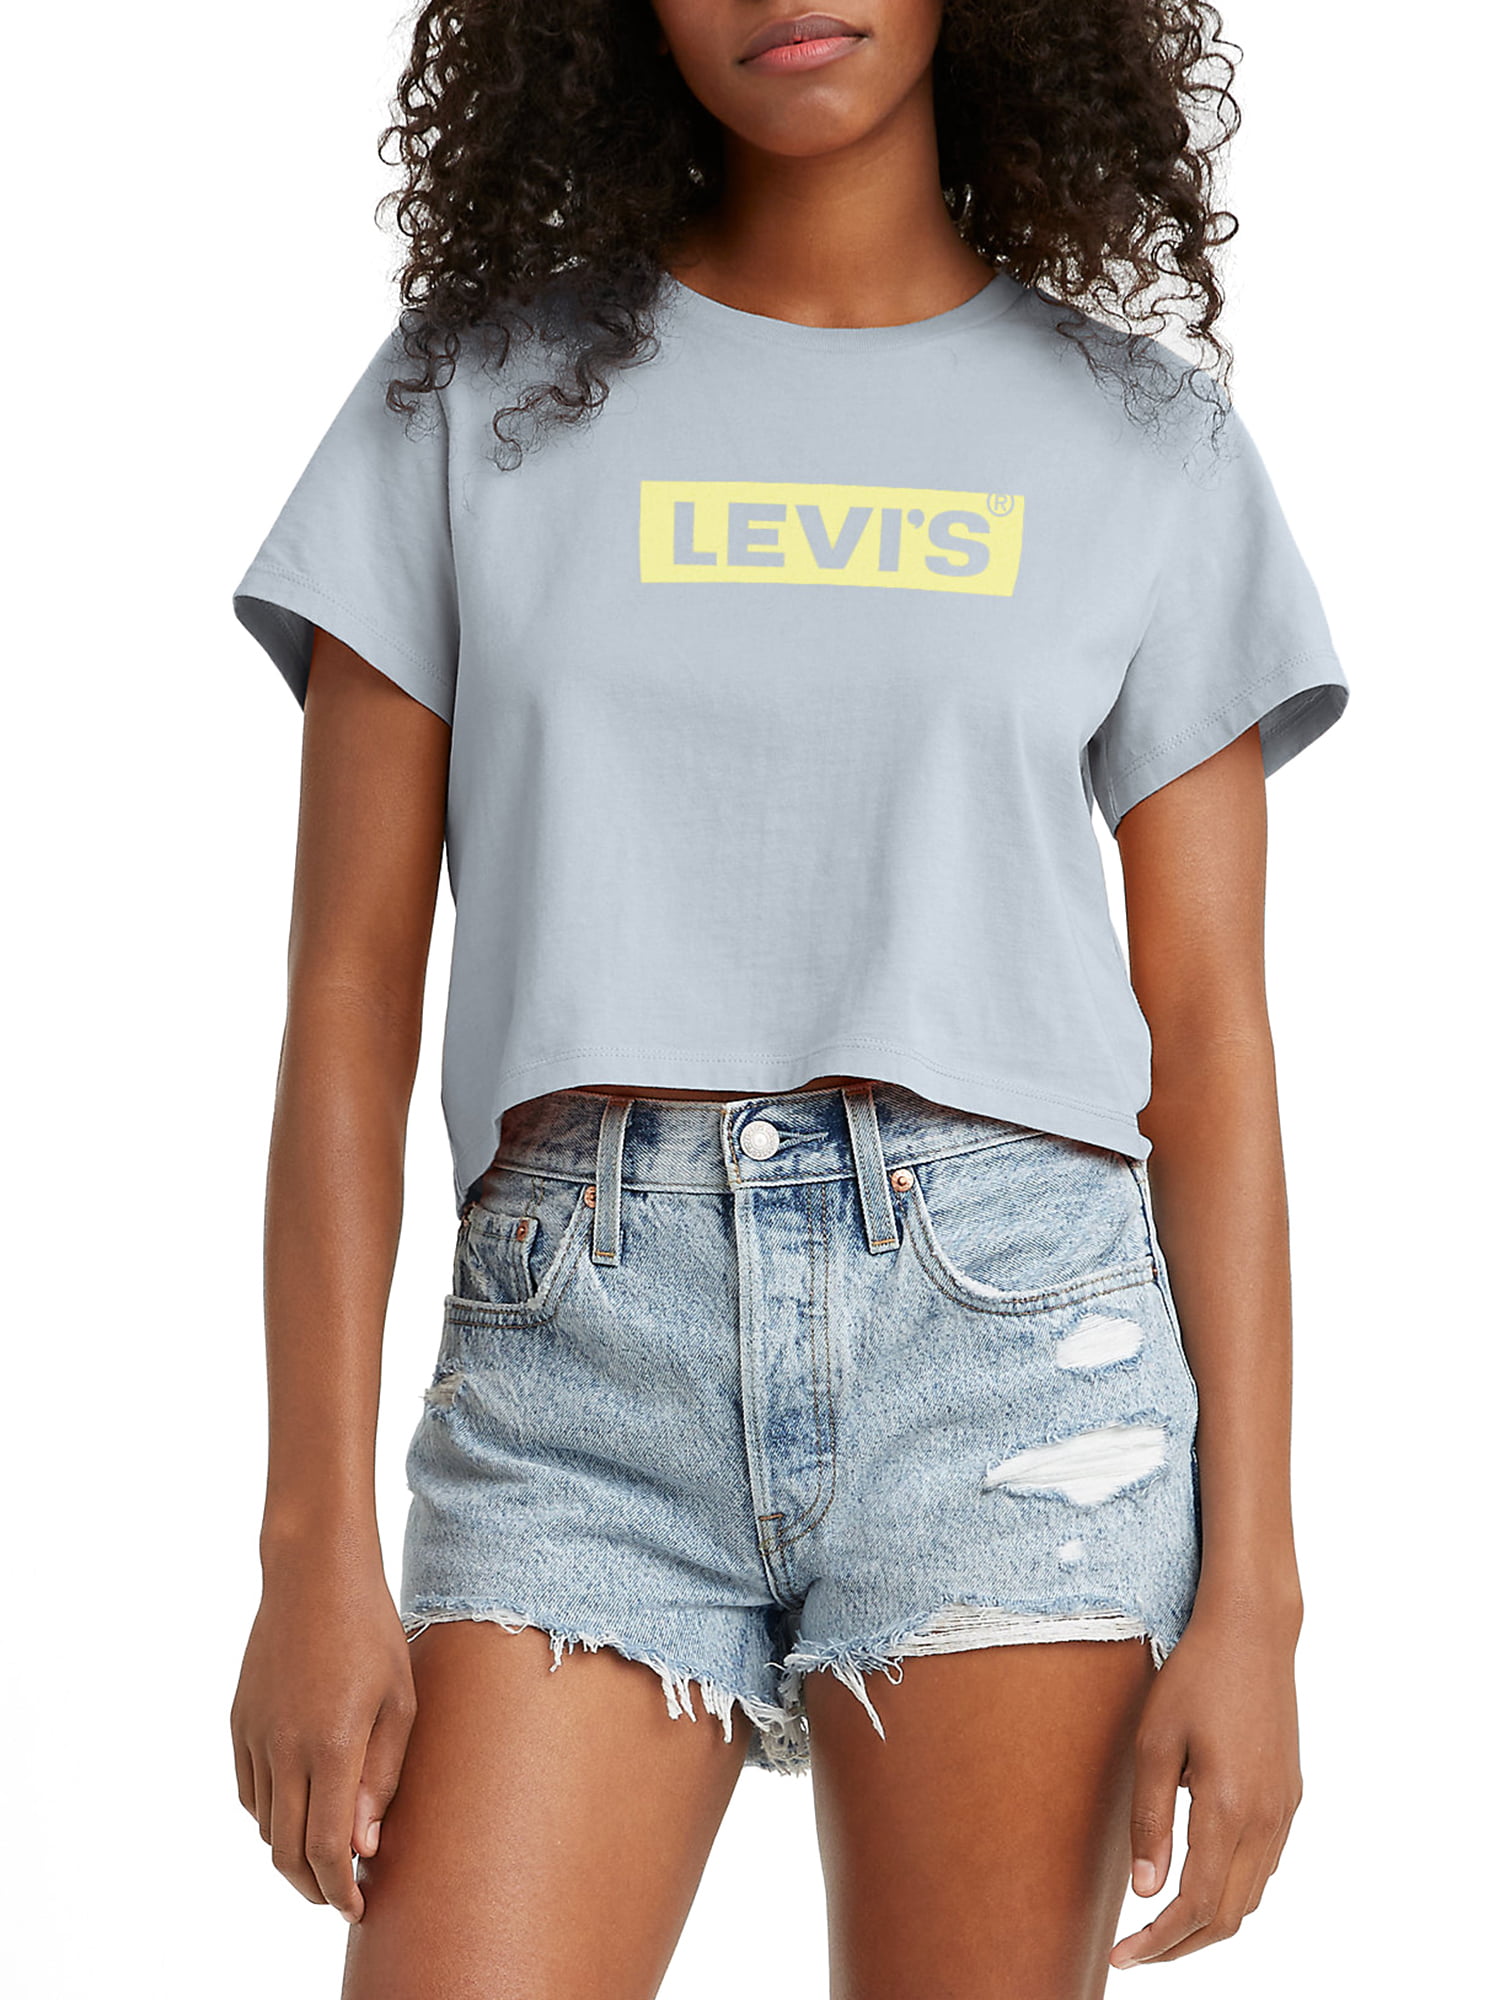 Levi's Original Women's Cropped Jordie T-shirt 